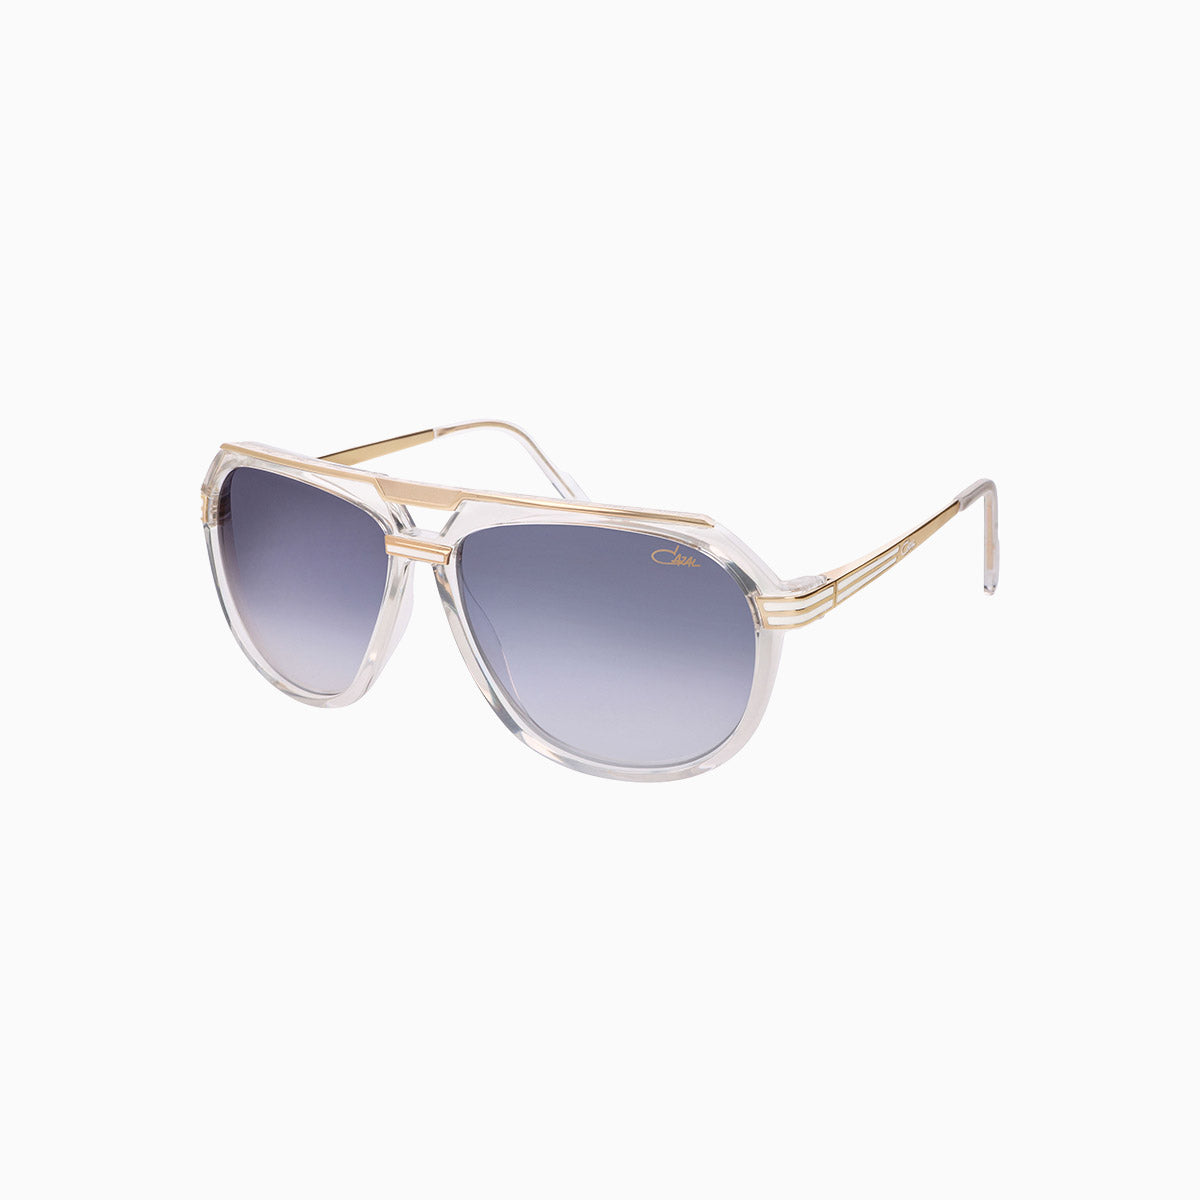 mens-cazal-674-crystal-gold-sunglasses-cazal-674-002